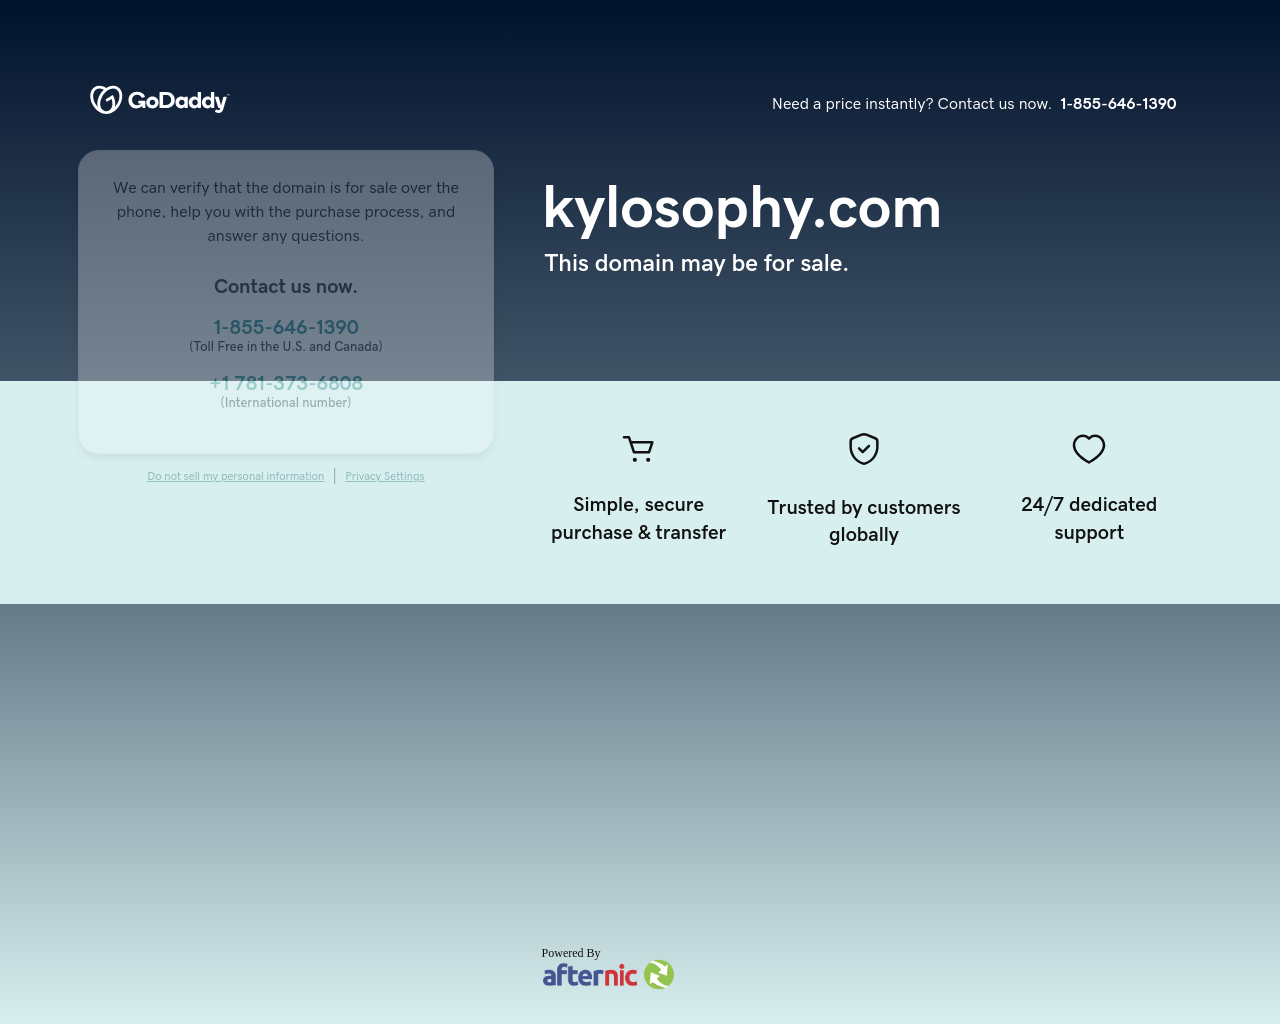 kylosophy.com